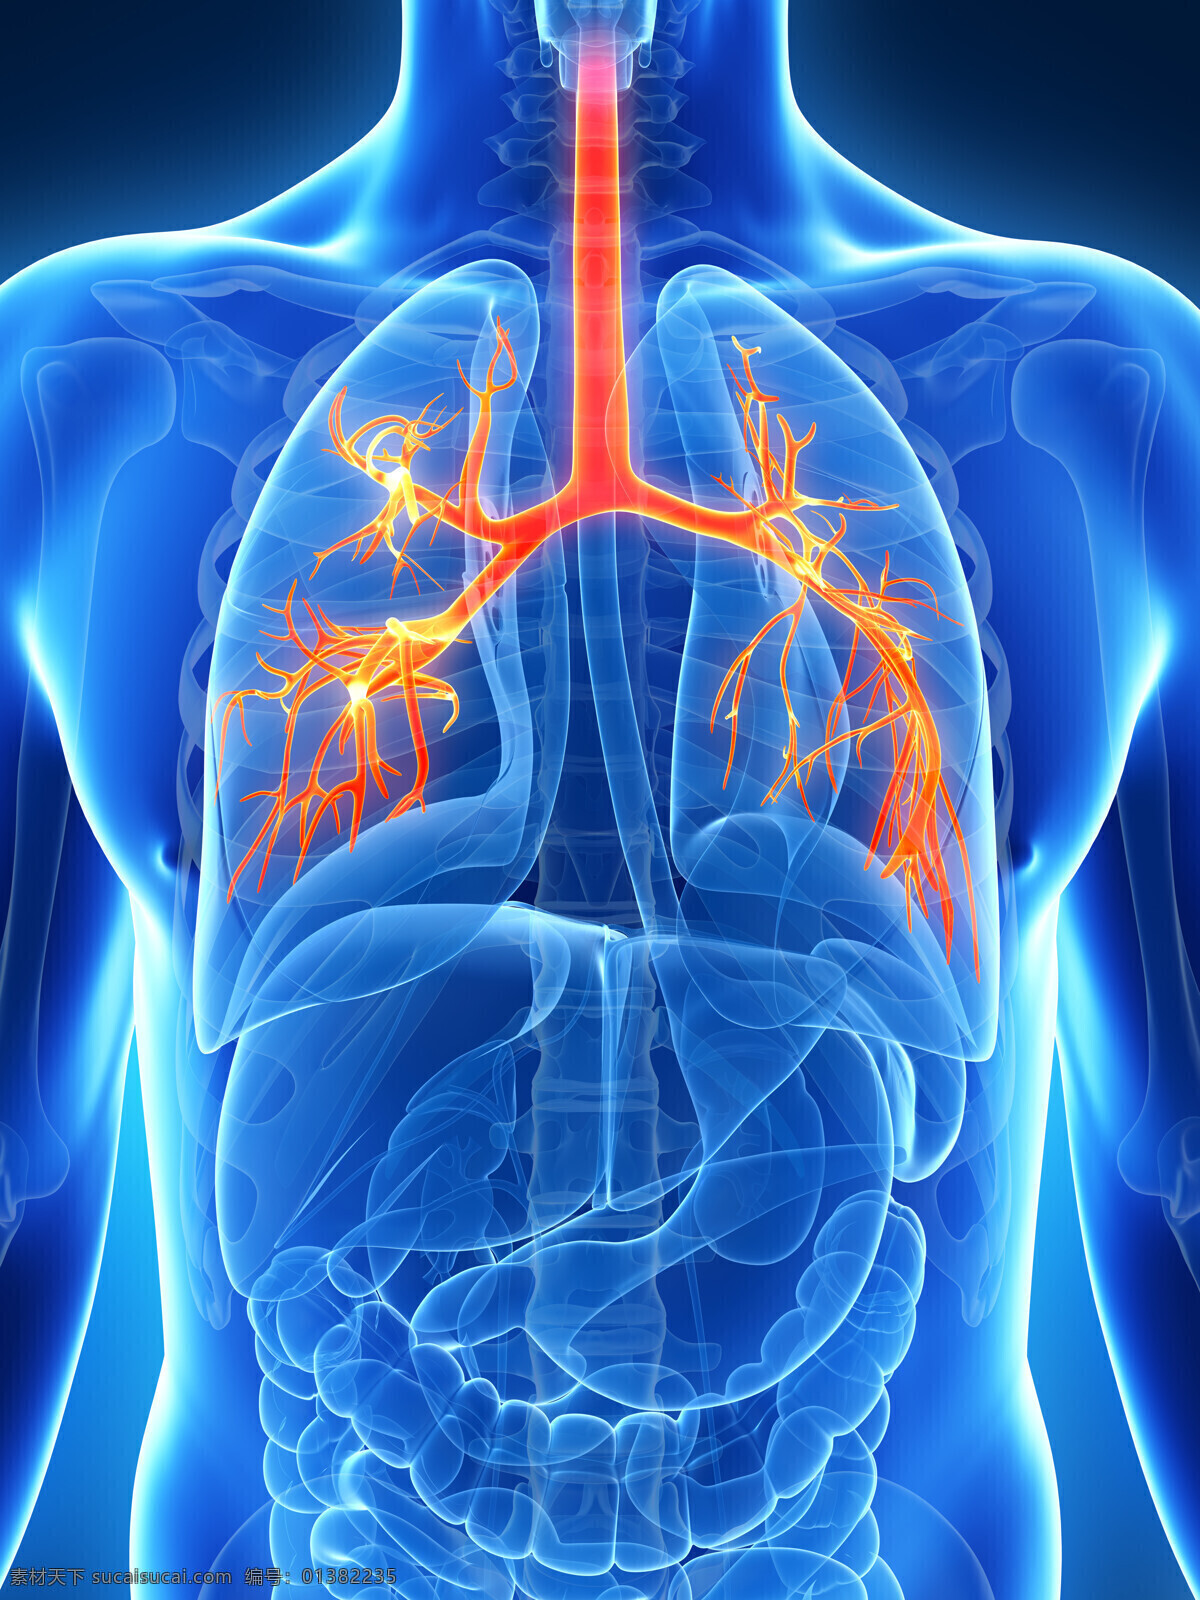 肺部 人体器官 人体 人体组织 人体结构 医学 医疗 科学 医疗护理 现代科技